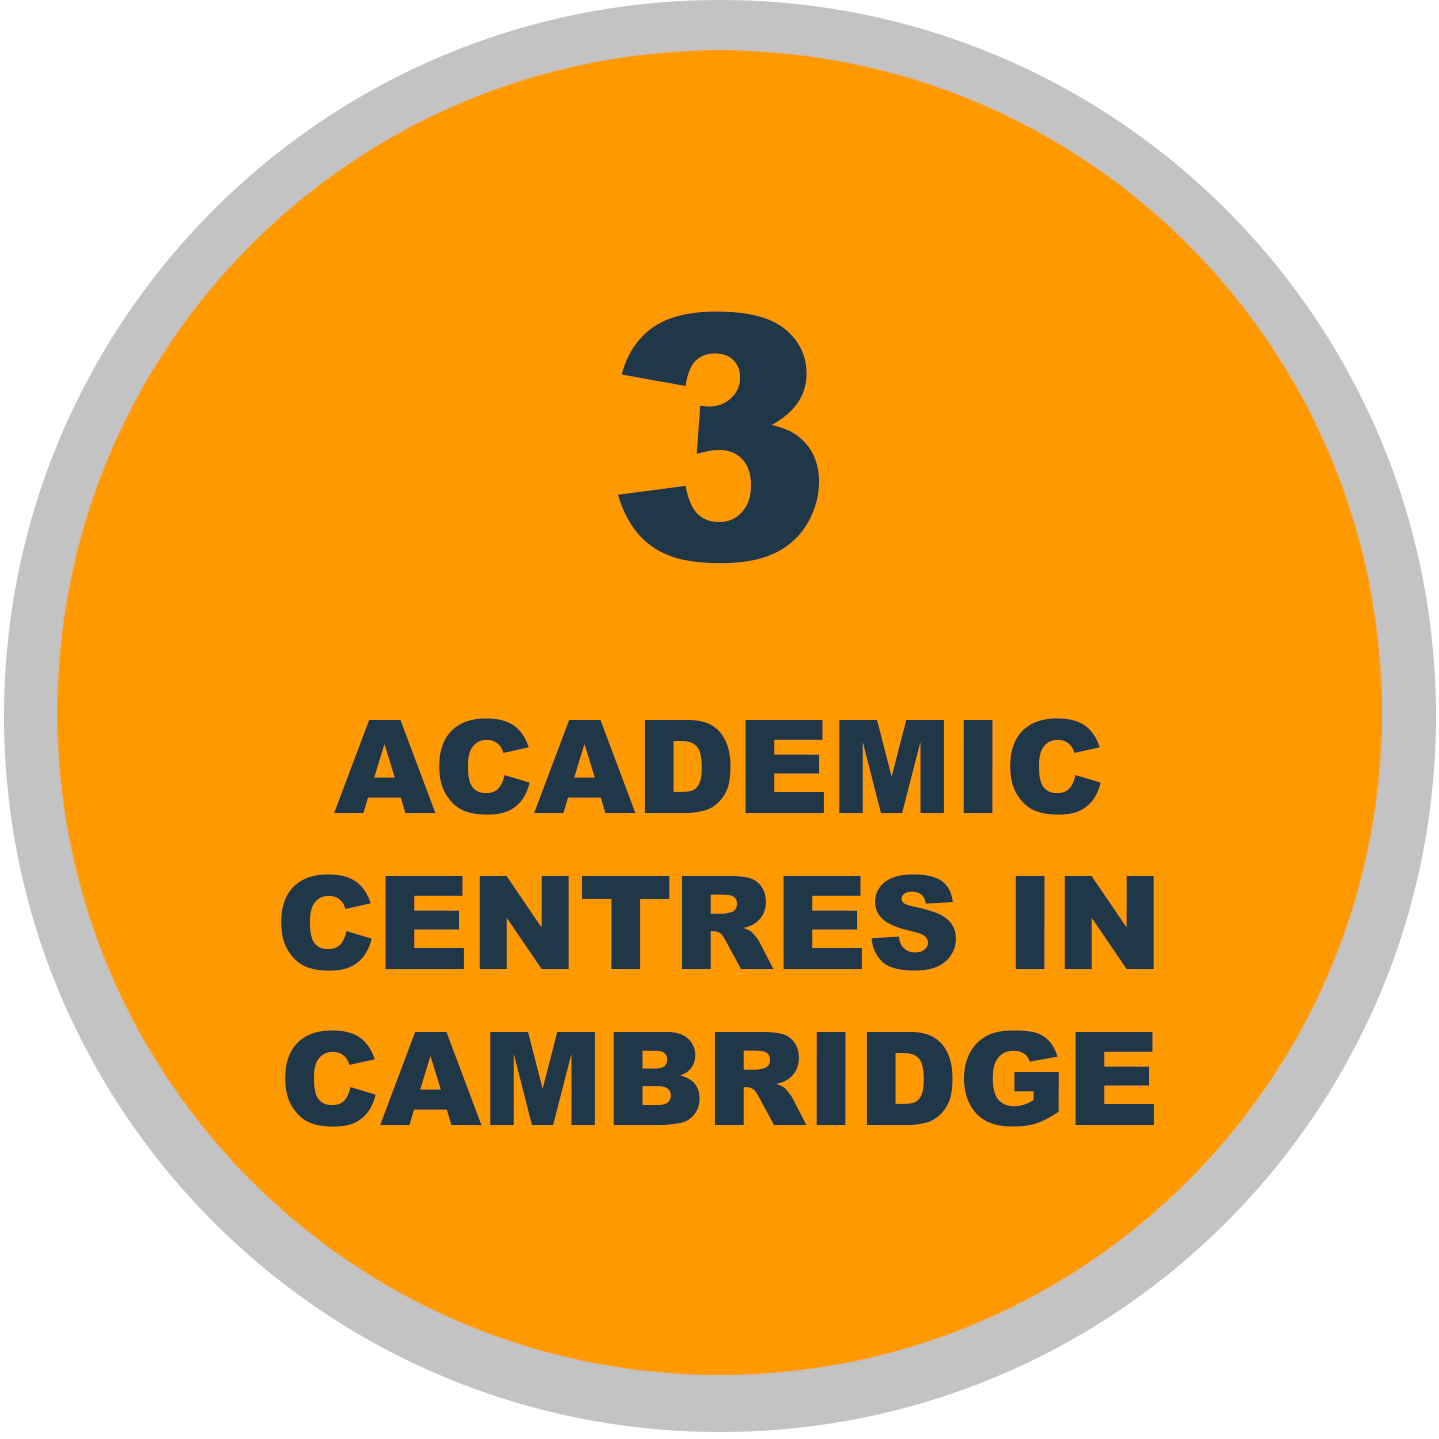 3 academic centres in Cambridge graphic